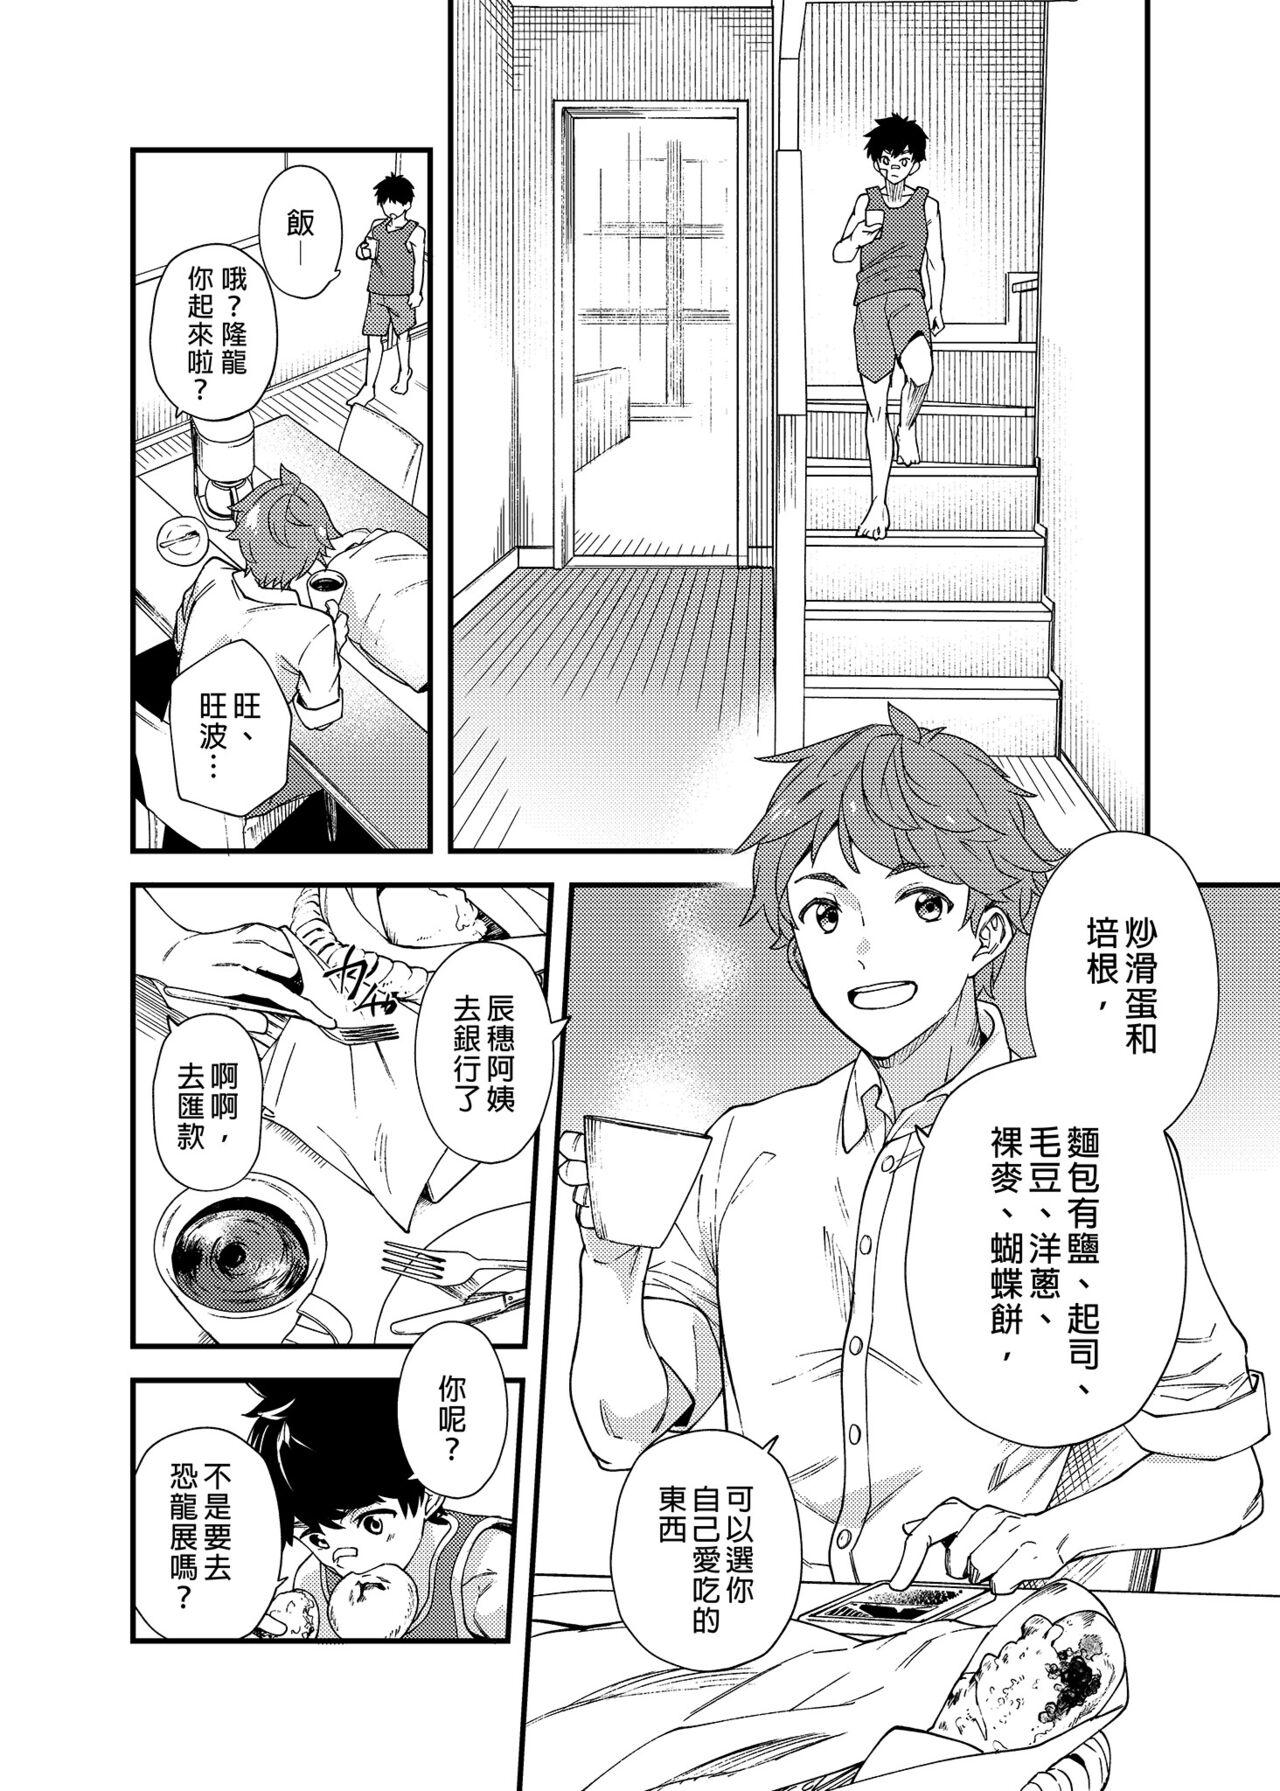 Self Na no ka tattara | 過了7天後 - Original Hymen - Page 5